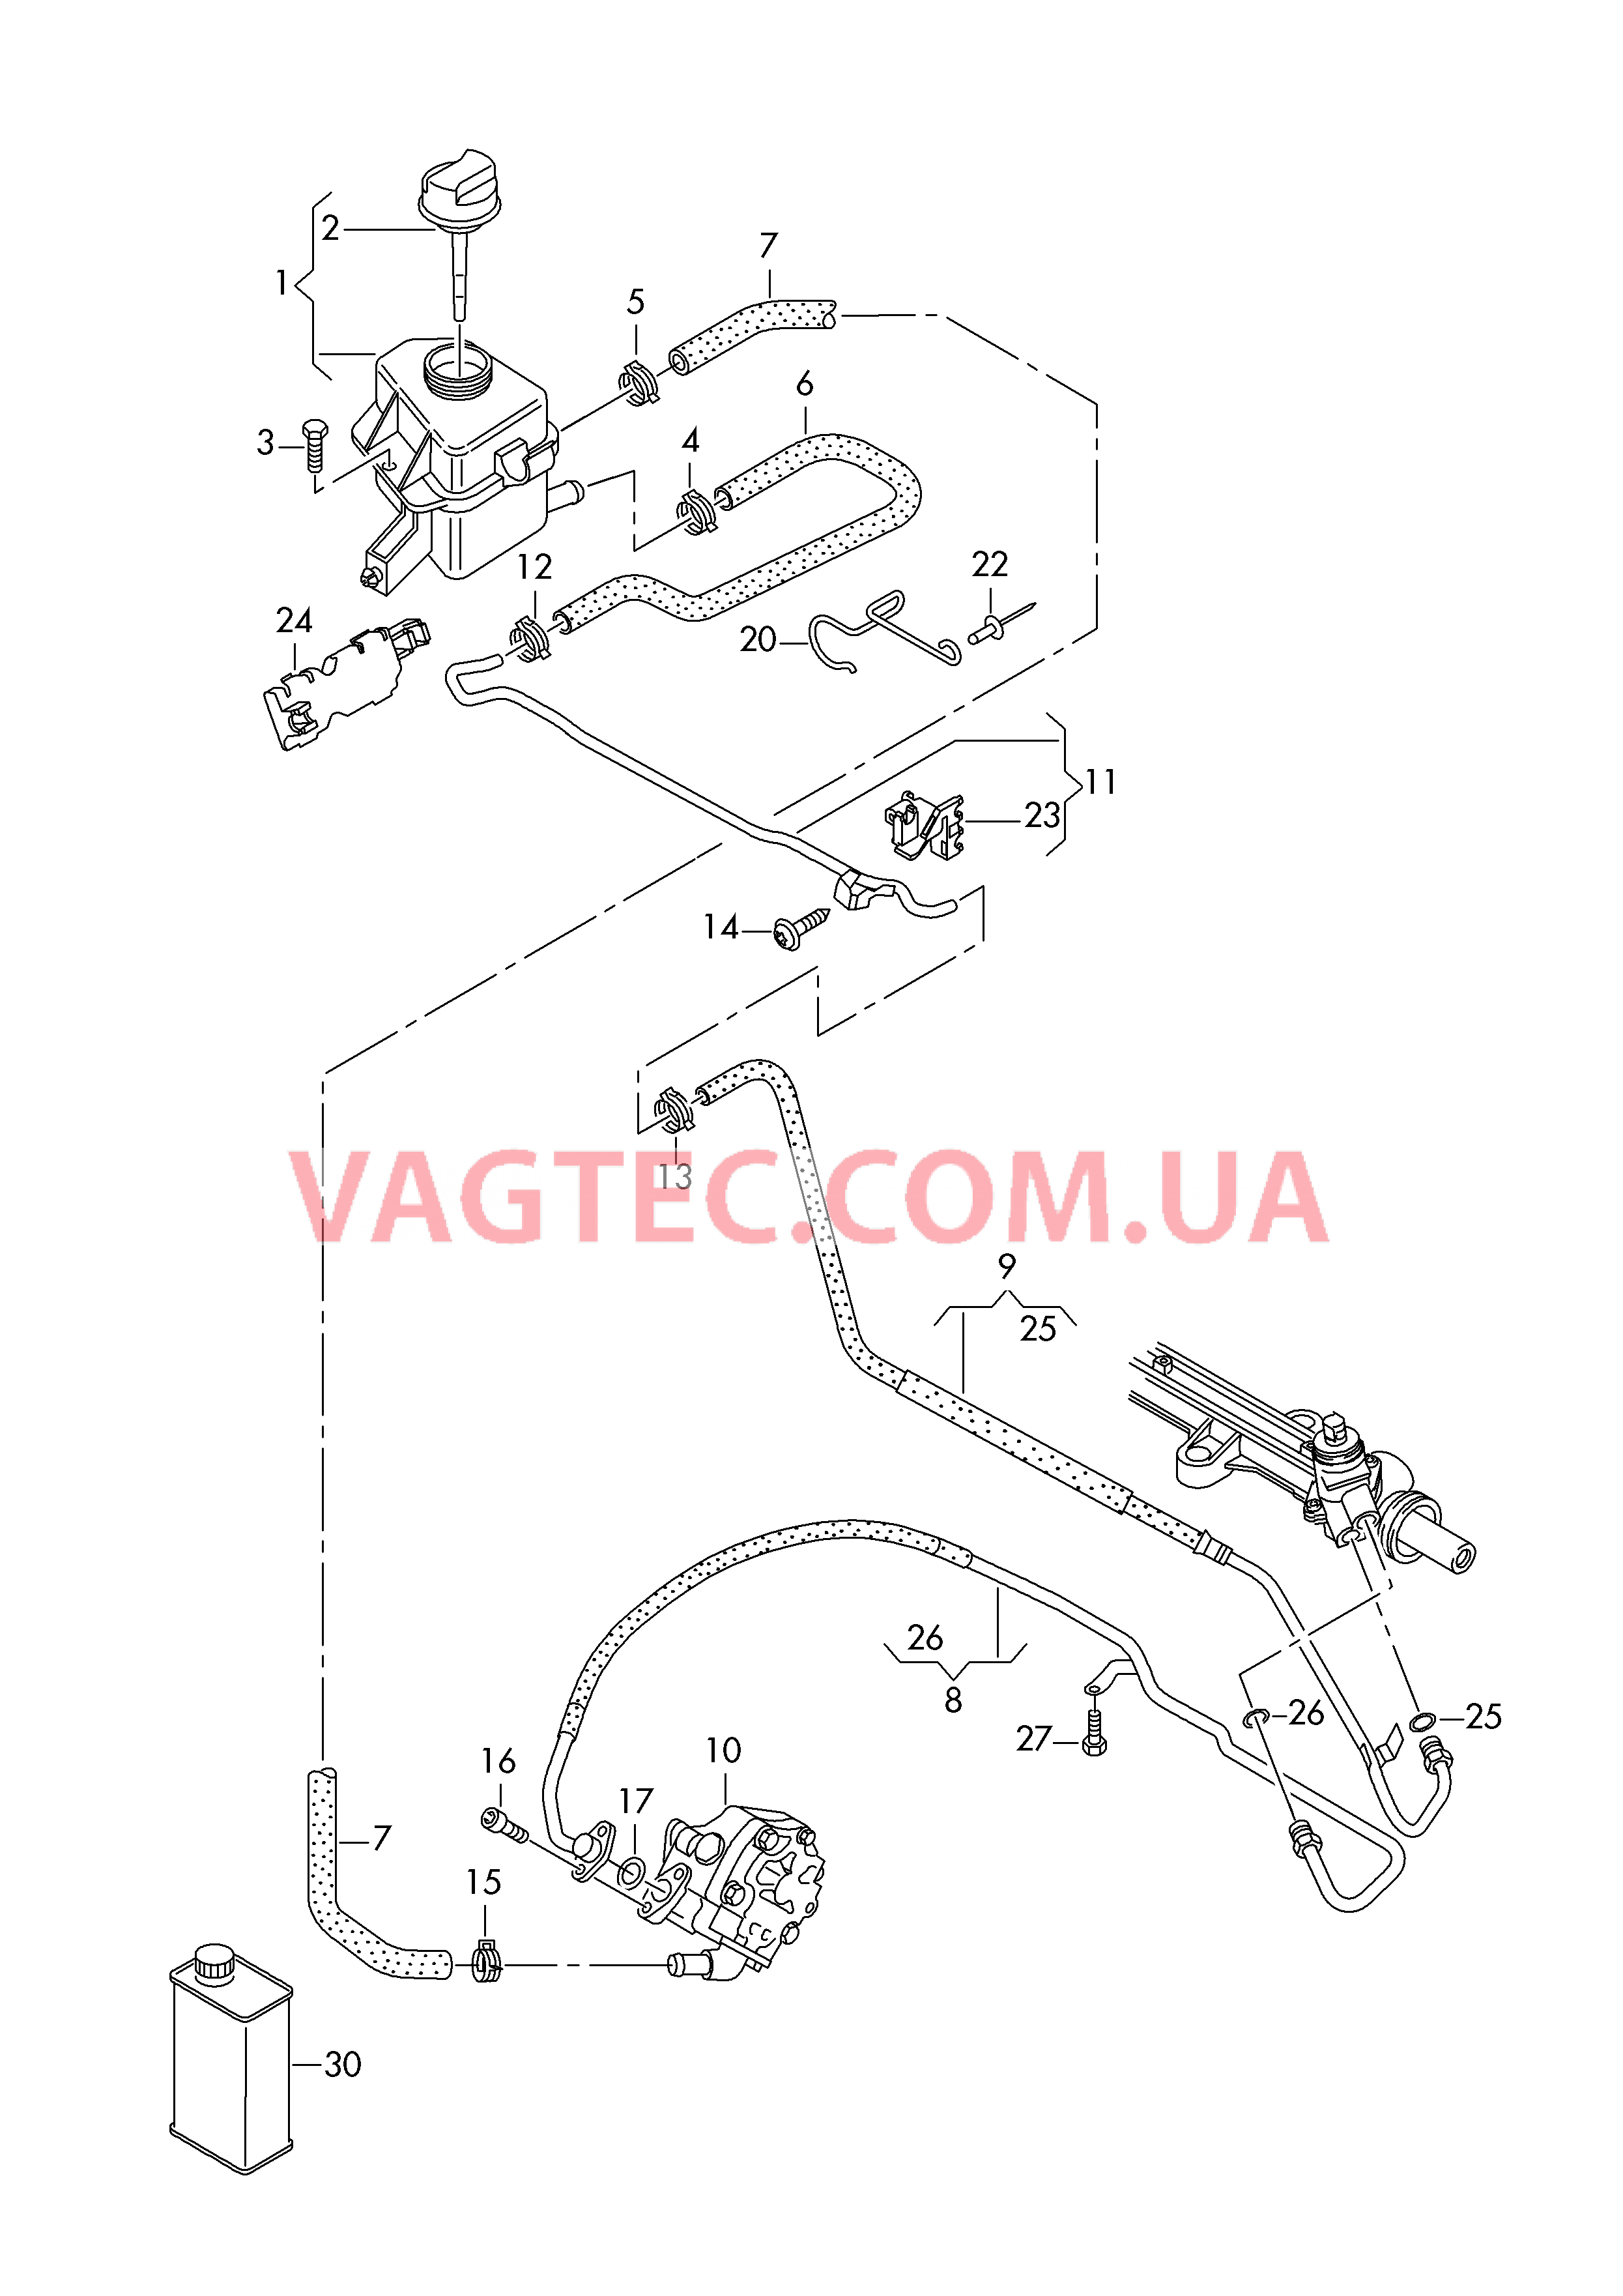 Масляный бачок с соединительными деталями, шлангами  для ГУPа  для VOLKSWAGEN Transporter 2018-1